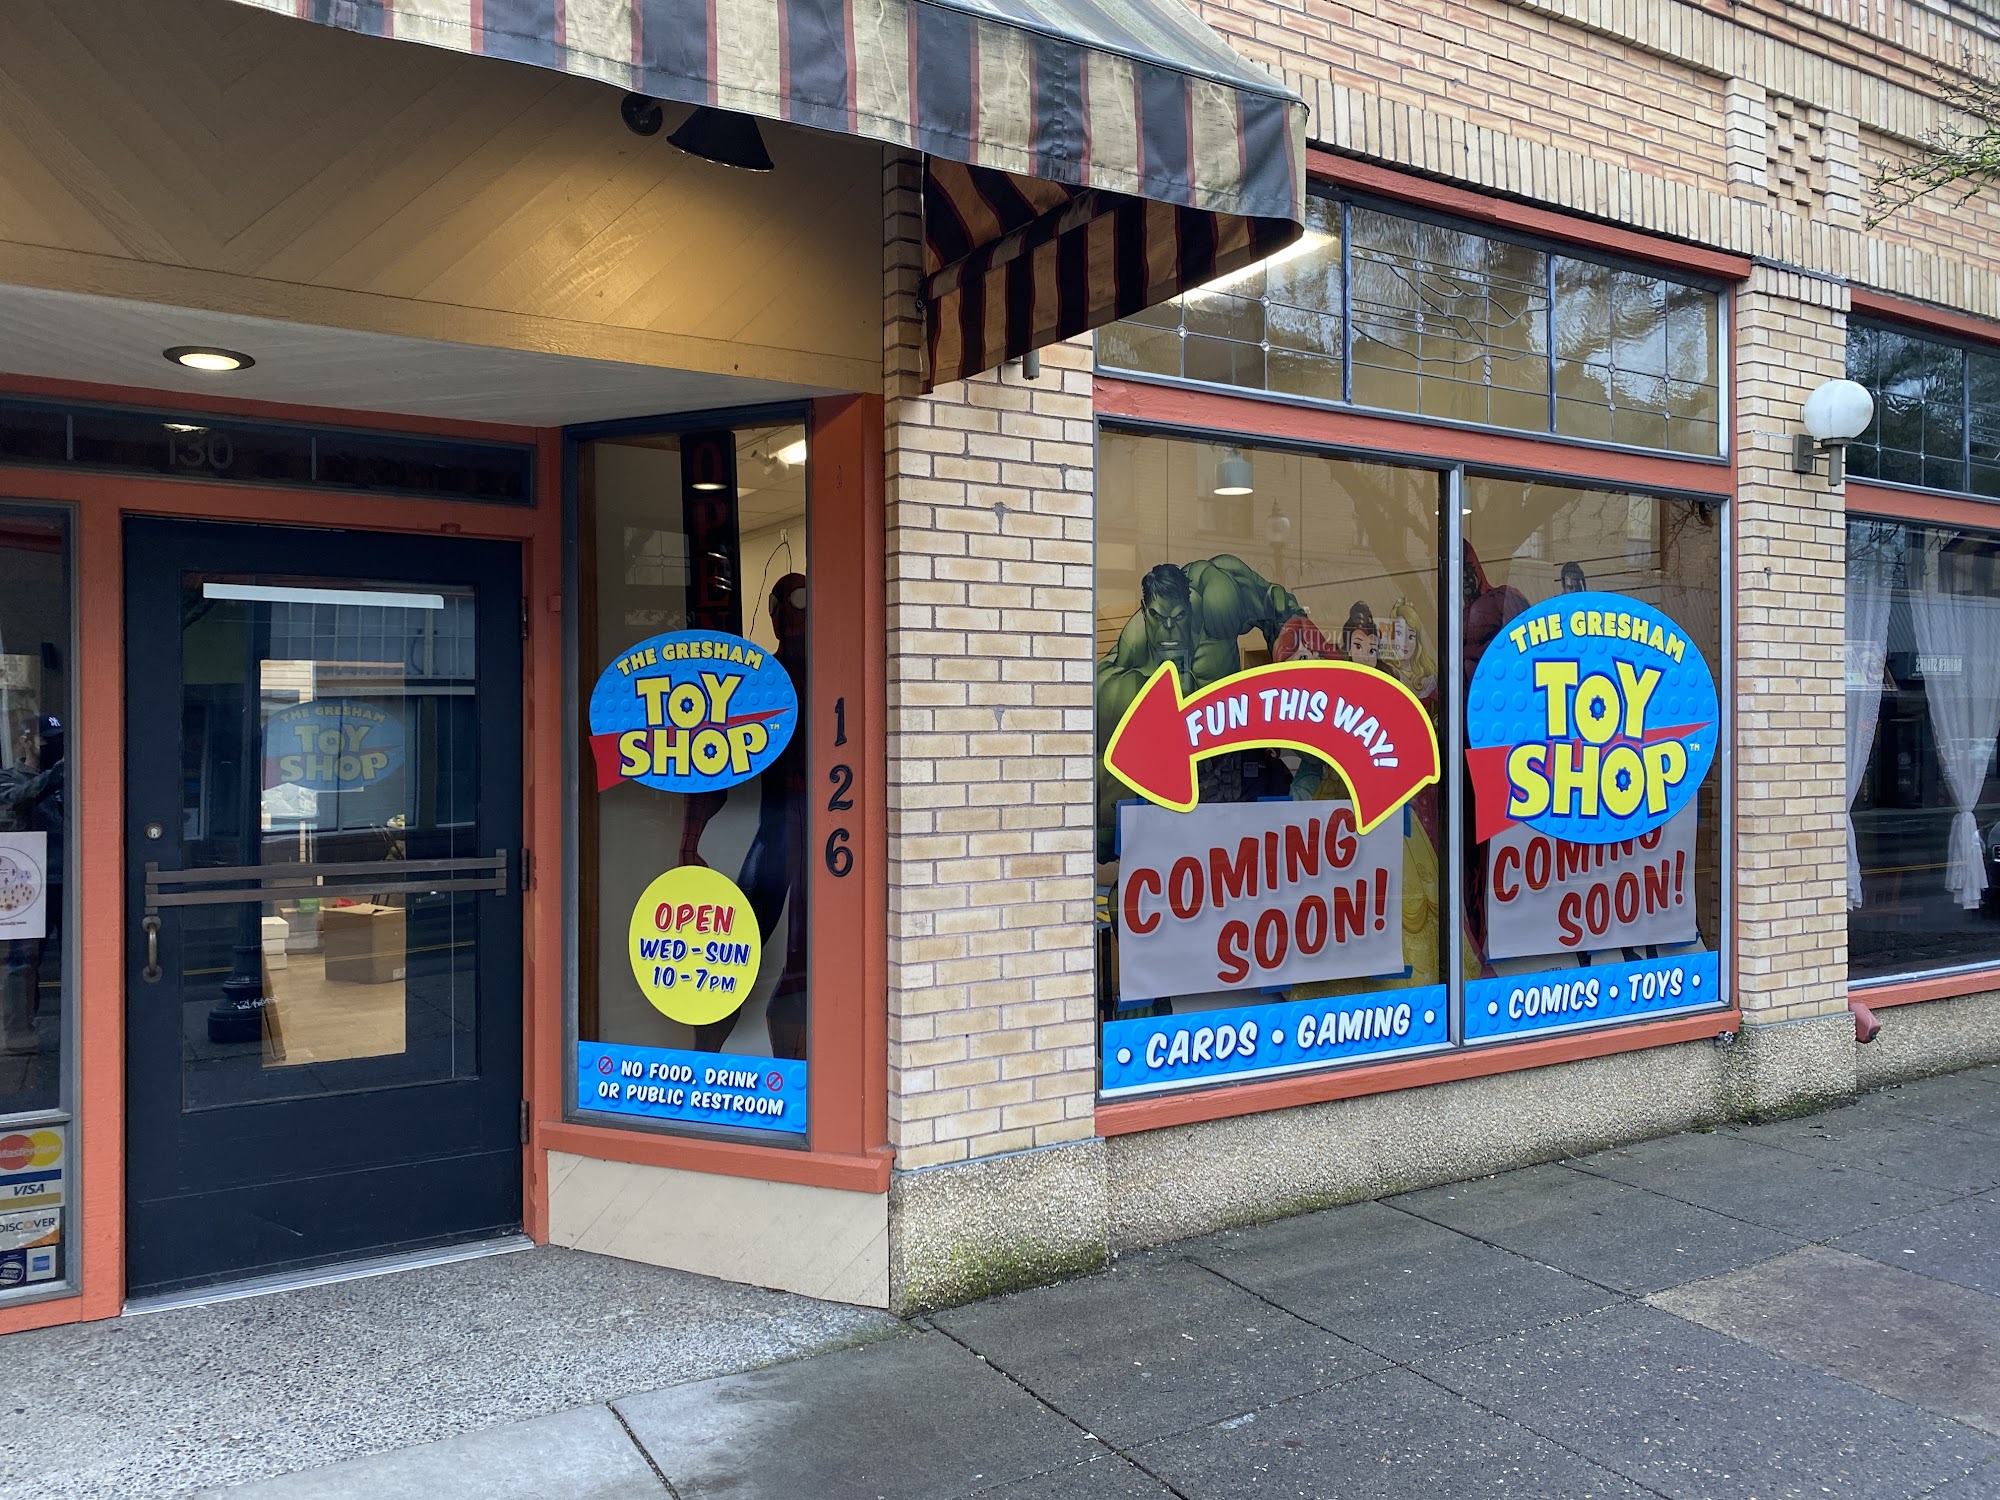 The Gresham Toy Shop